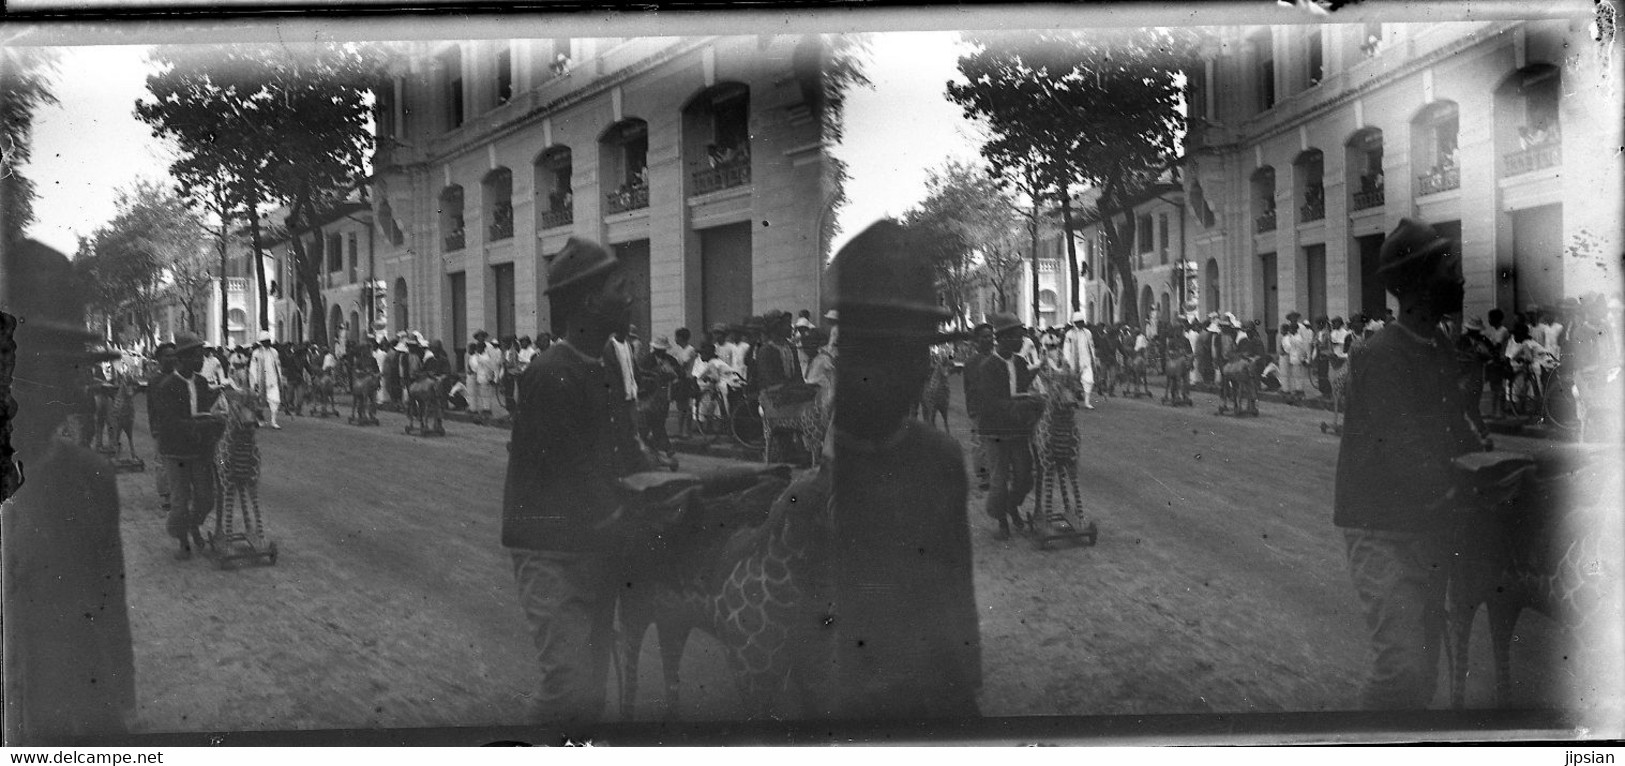 lot 24 plaques verre photo stéréo négatives Cérémonies Incinération du Roi Cambodge Sisowath à Phnom Penh 2 mars 1928 MP